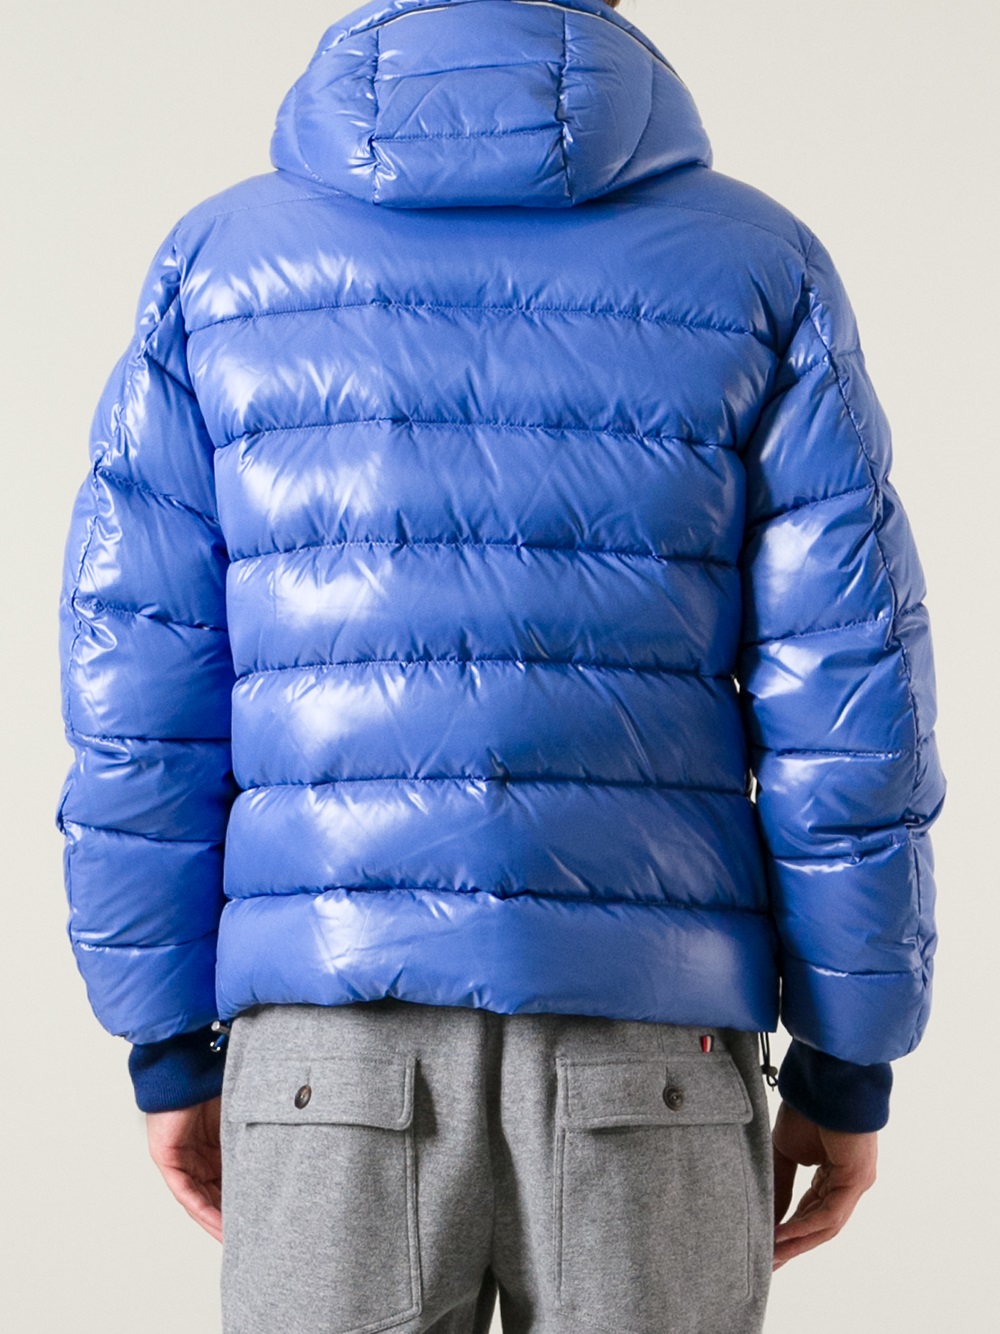 Moncler Aubert Padded Jacket in Blue for Men - Lyst